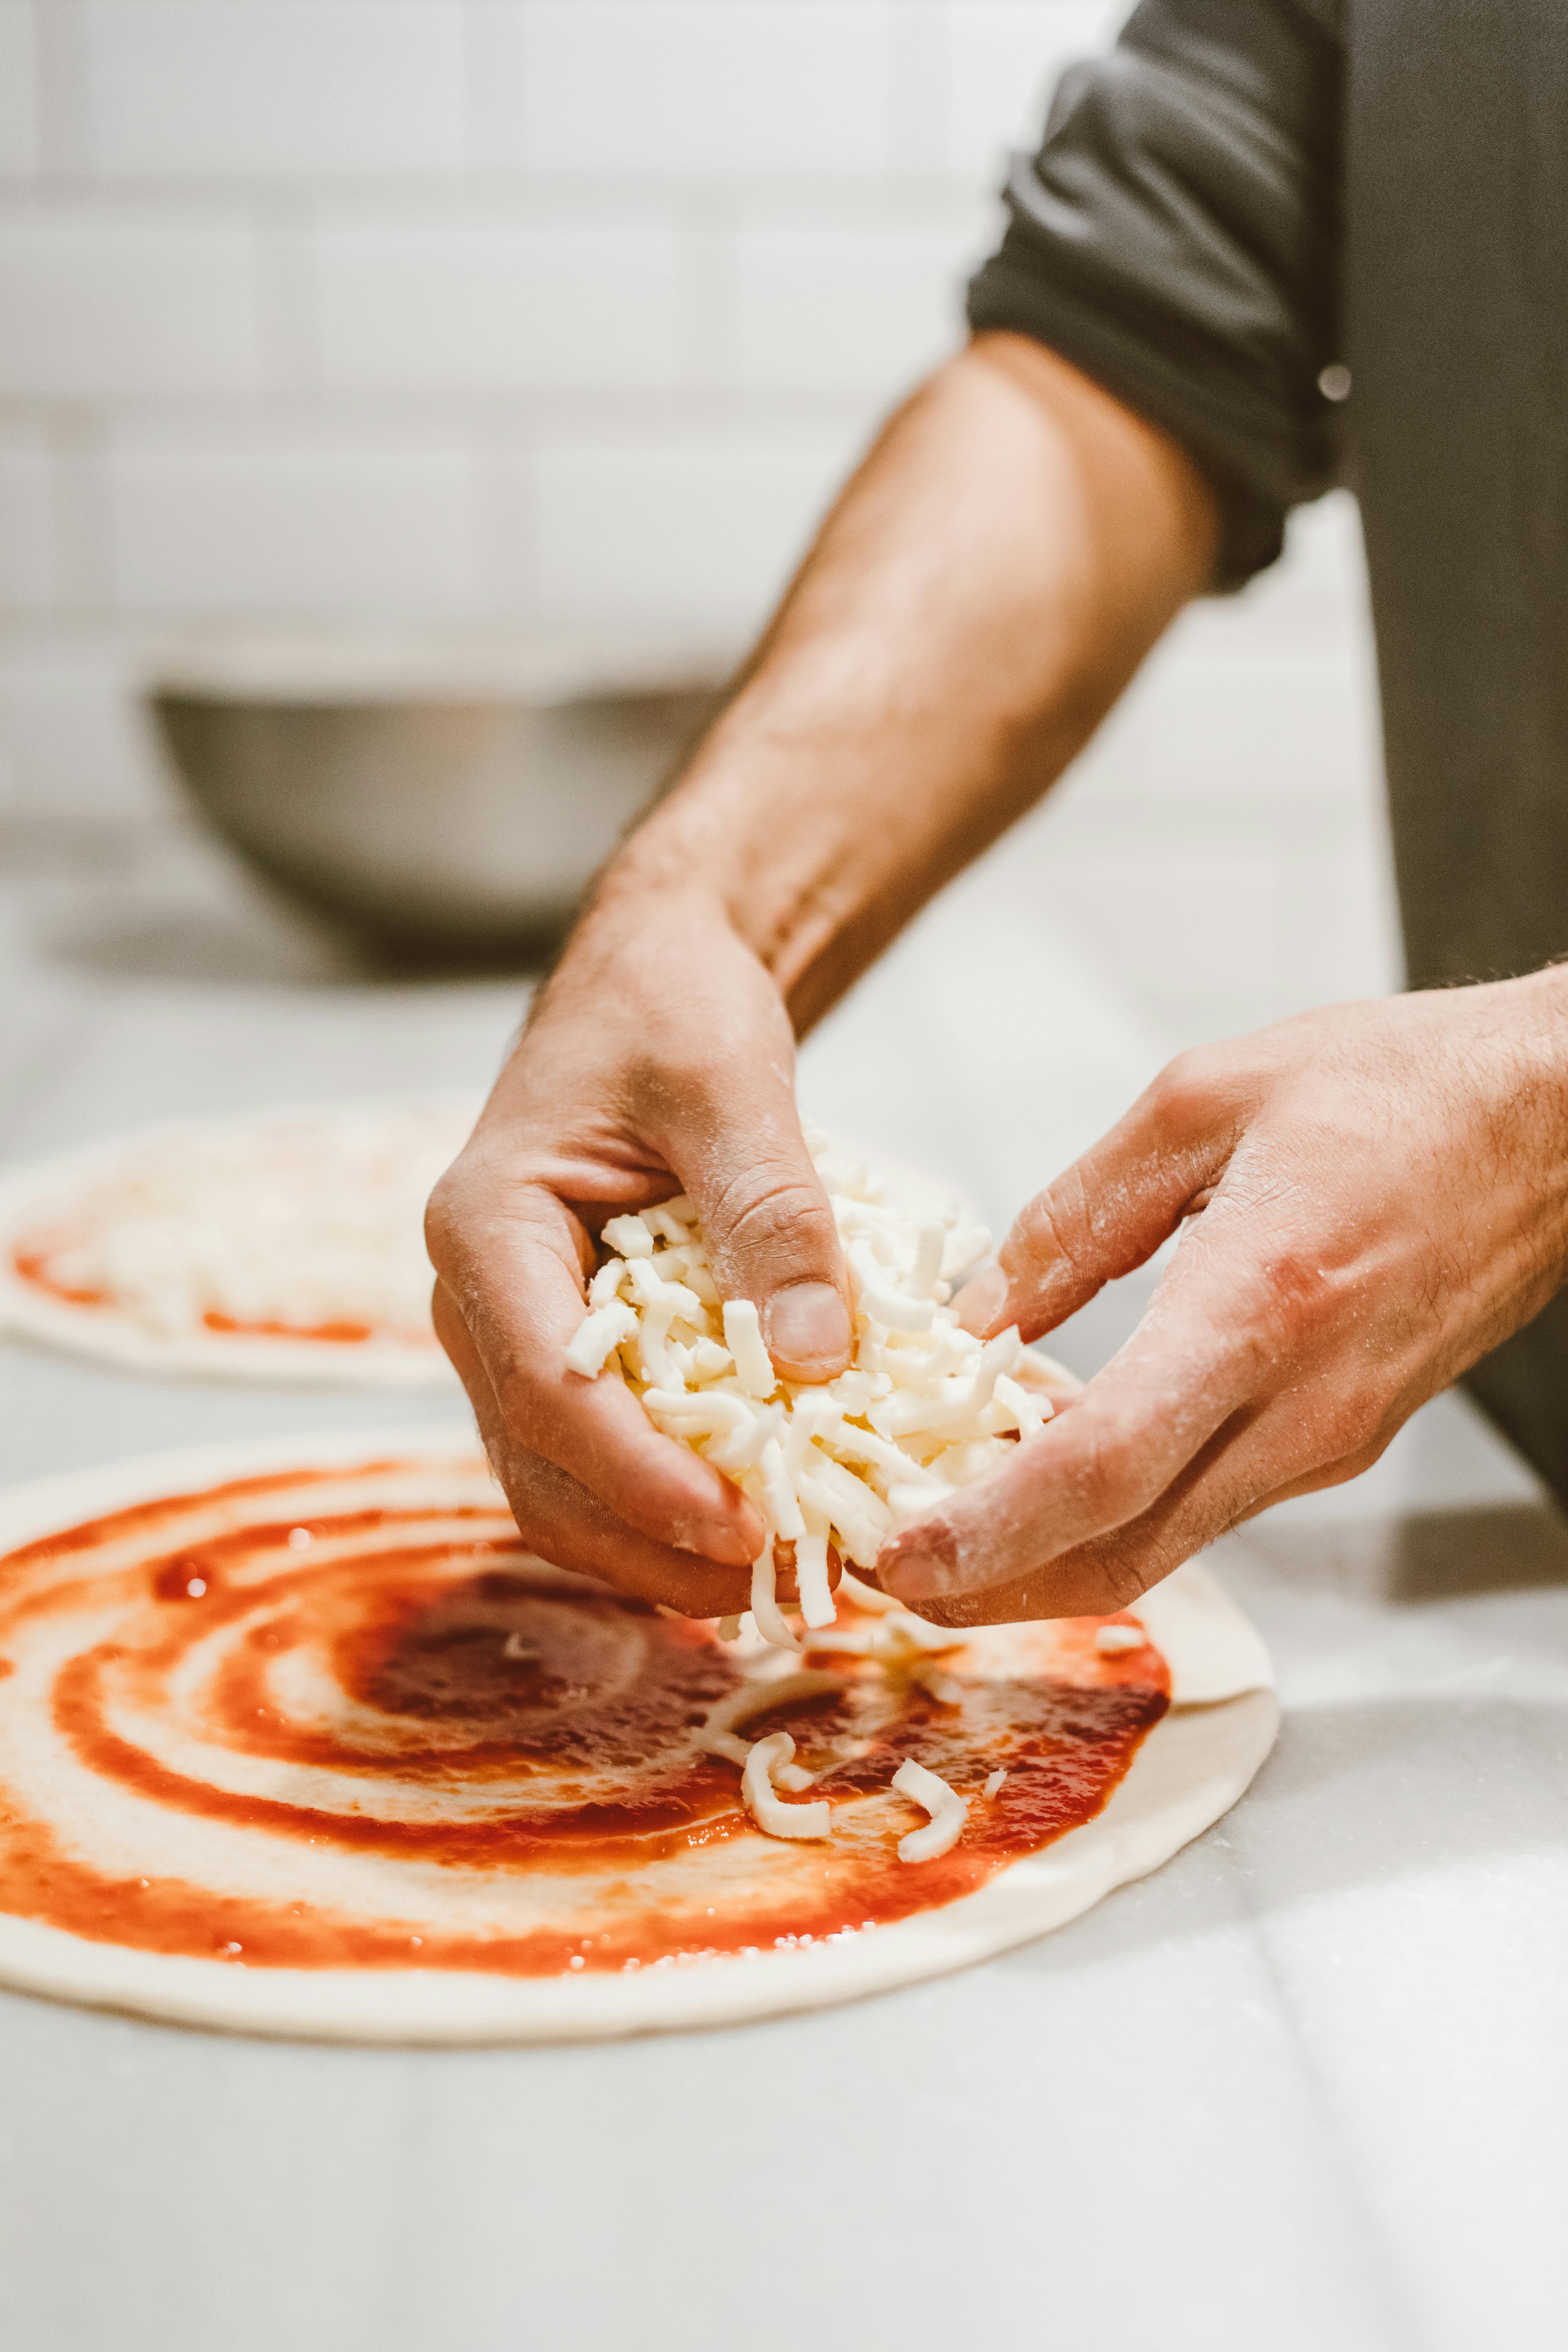 Un hombre haciendo pizza desde cero | Fuente: Pexels